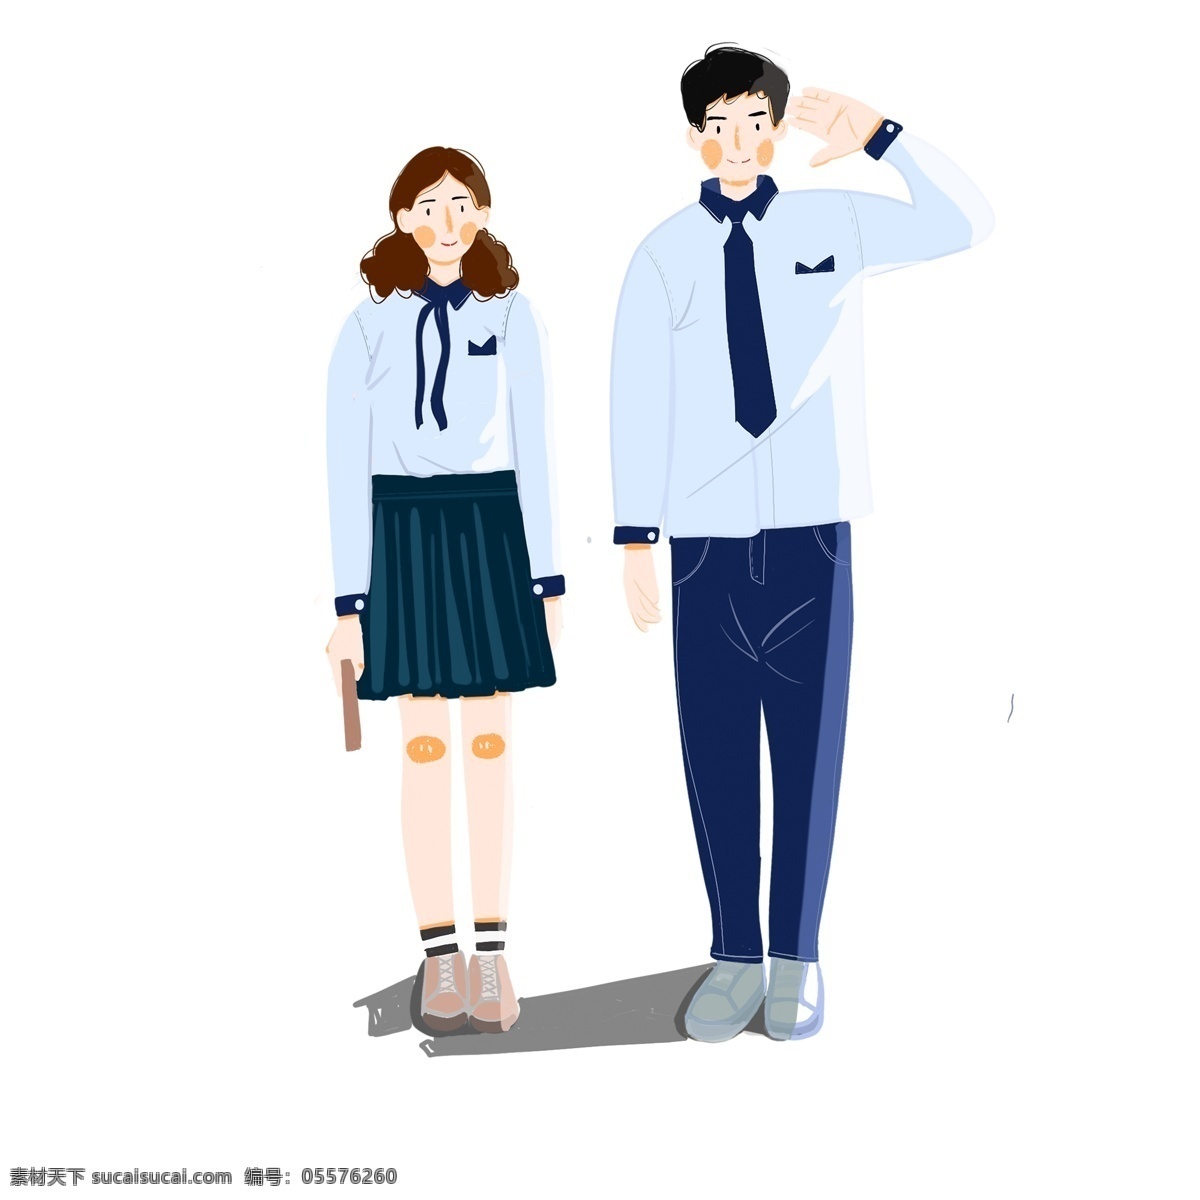 清新 可爱 敬礼 两个 学生 卡通 男生 女生 青年 人物 手绘 校服